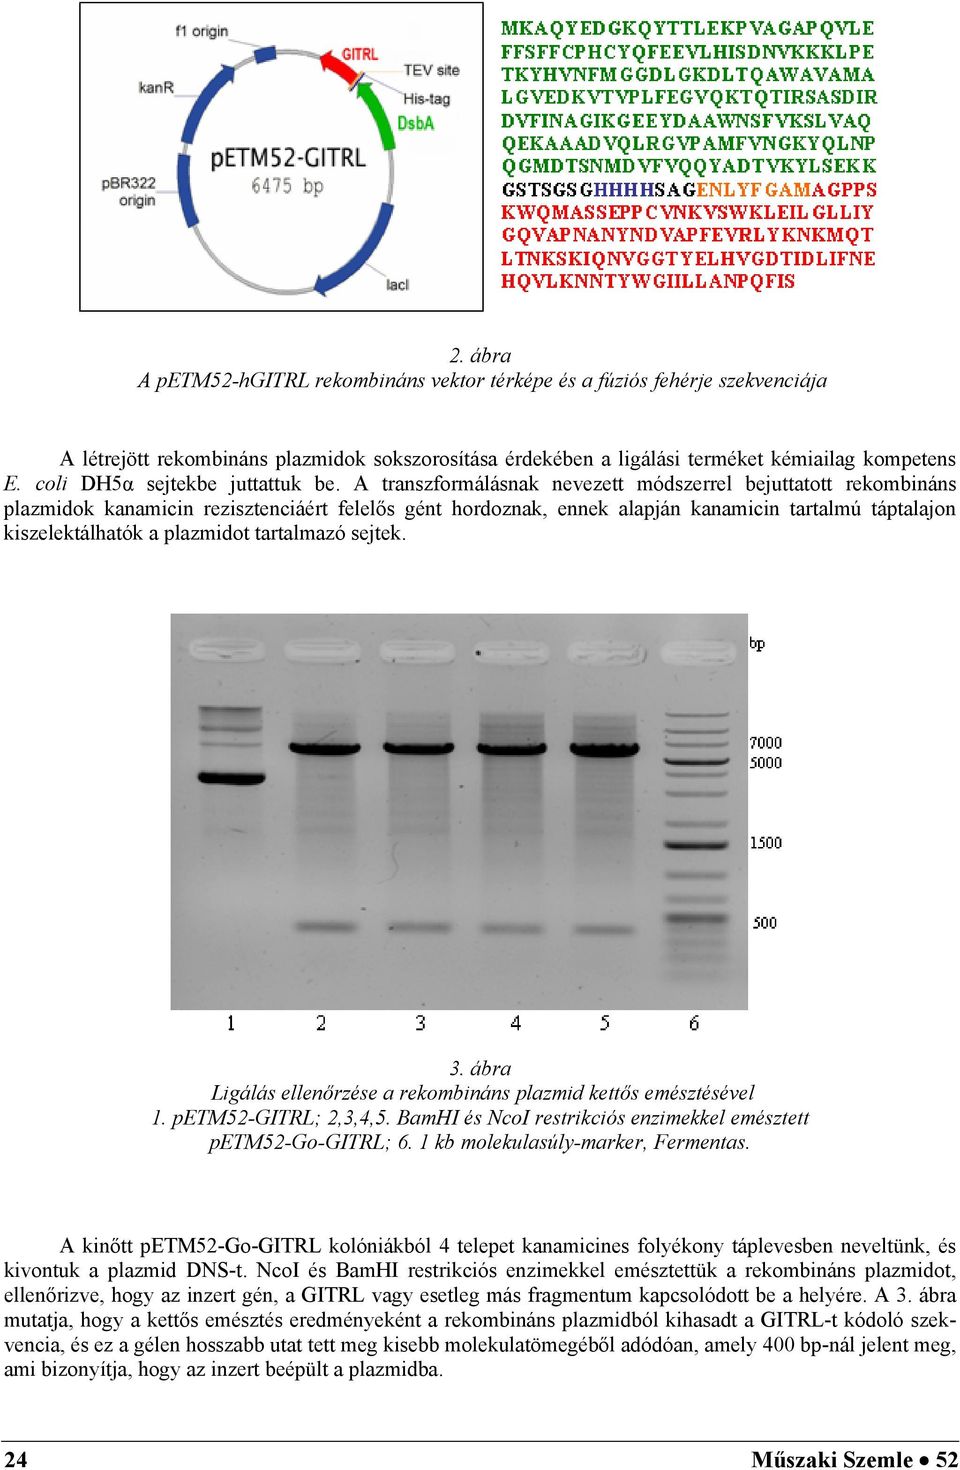 A transzformálásnak nevezett módszerrel bejuttatott rekombináns plazmidok kanamicin rezisztenciáért felelős gént hordoznak, ennek alapján kanamicin tartalmú táptalajon kiszelektálhatók a plazmidot